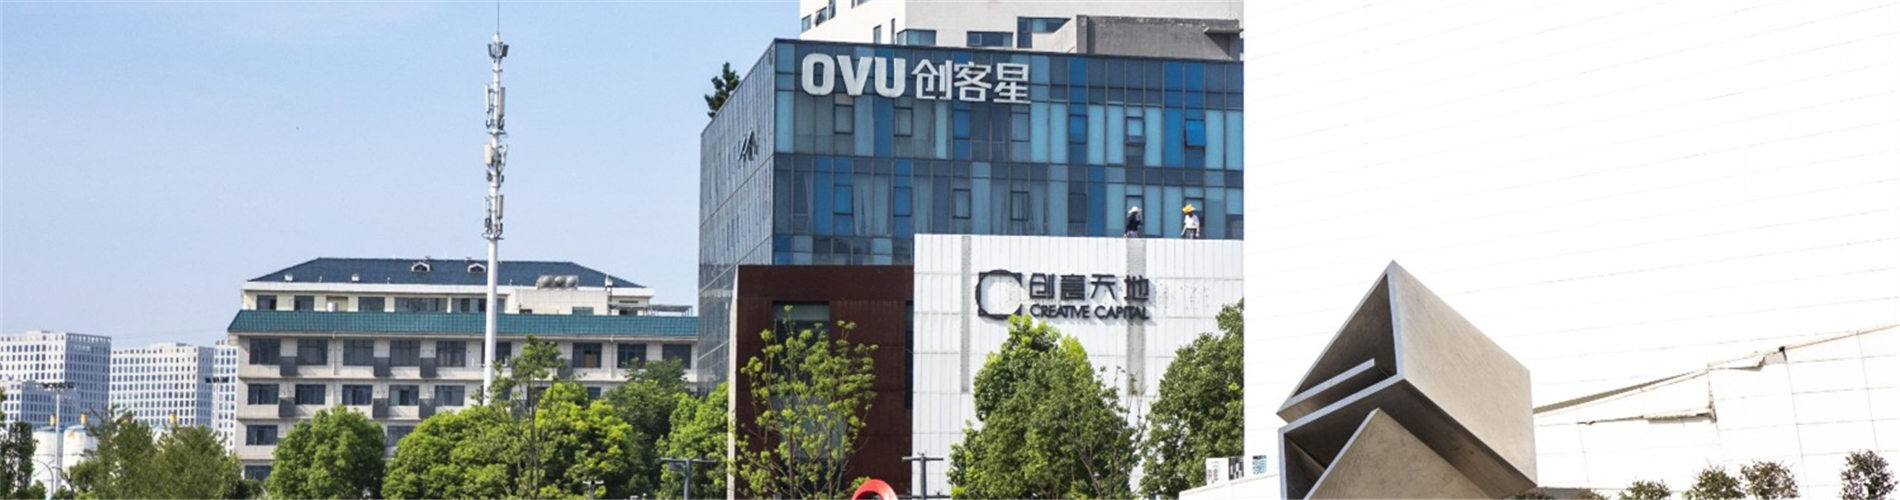 OVU创客星8年孵化500家大学生创业团队